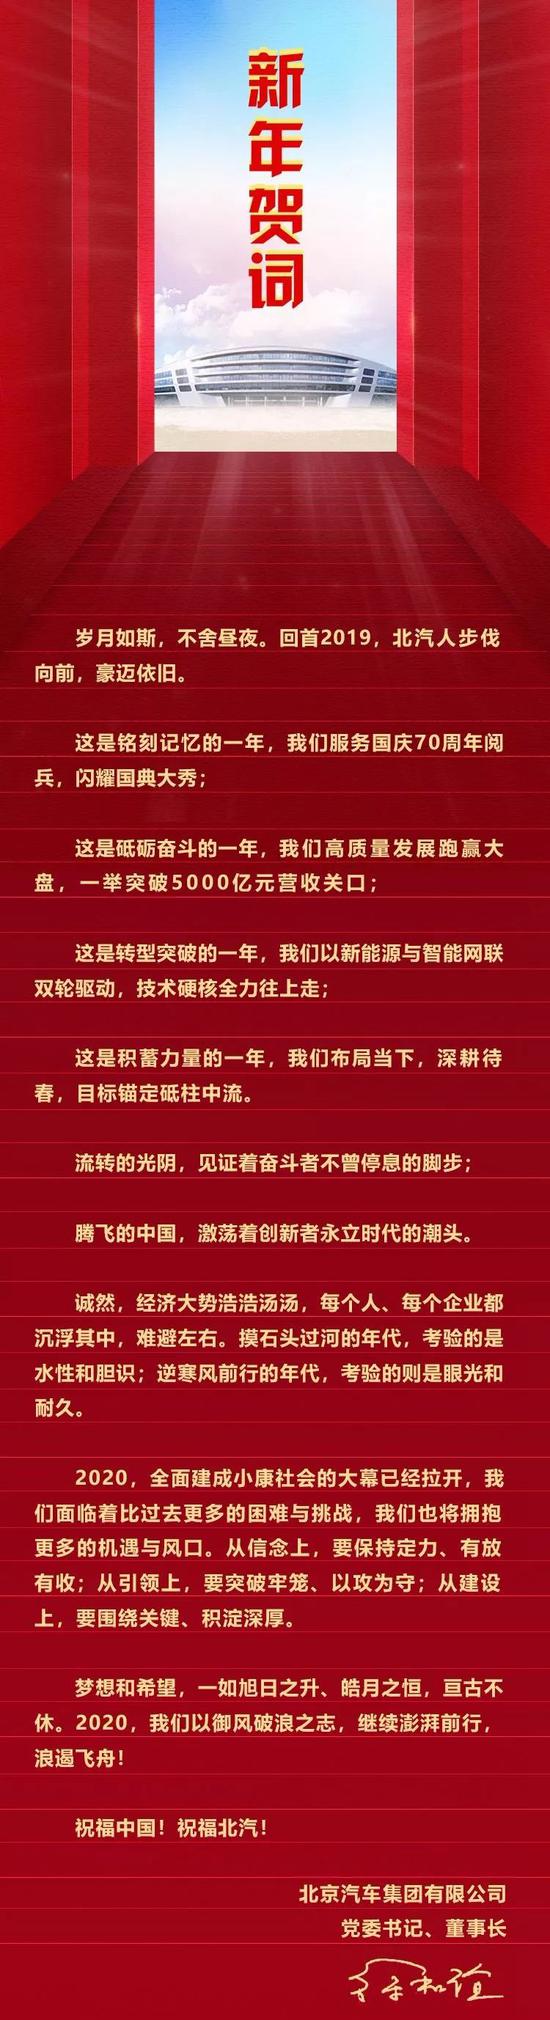 北汽党委书记徐和谊新年致辞：2020年将继续澎湃前行